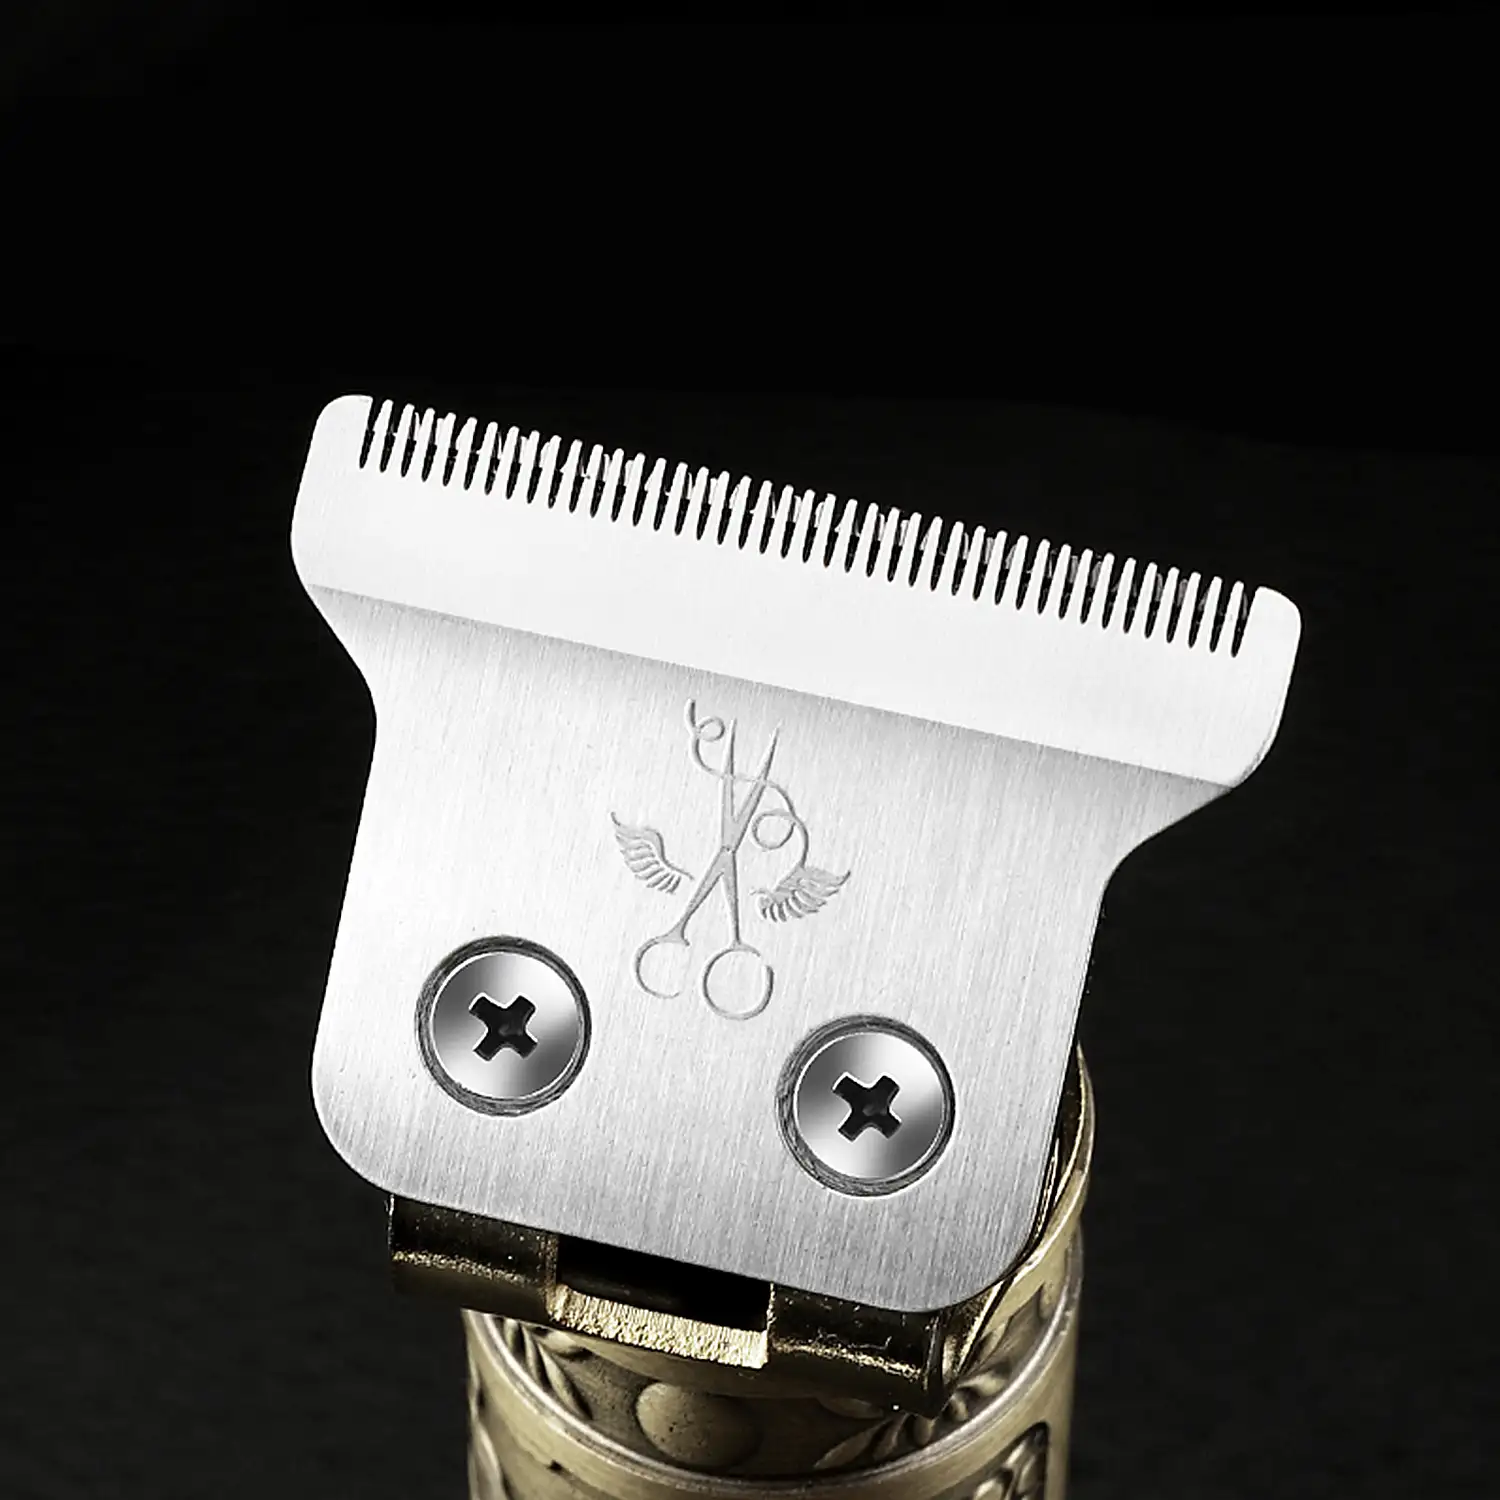 Recortador perfilador para pelo y barba LM-800. Diseño vintage completamente metálico. Con peines de 1 a 4mm y juego de accesorios. Batería recargable.